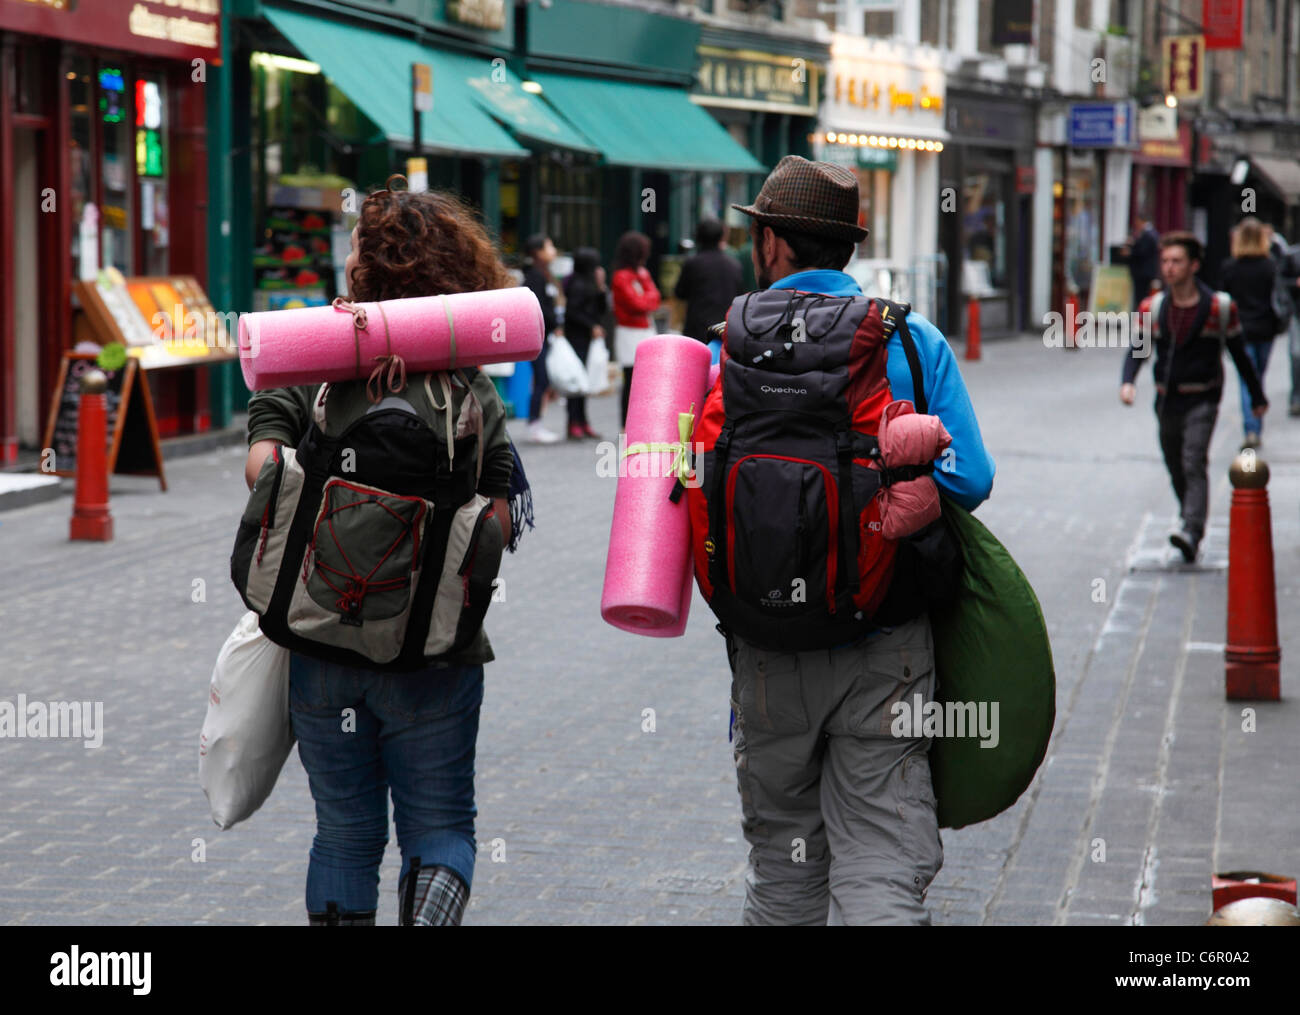 Los mochileros en China Town, Londres, Inglaterra, Reino Unido. Foto de stock